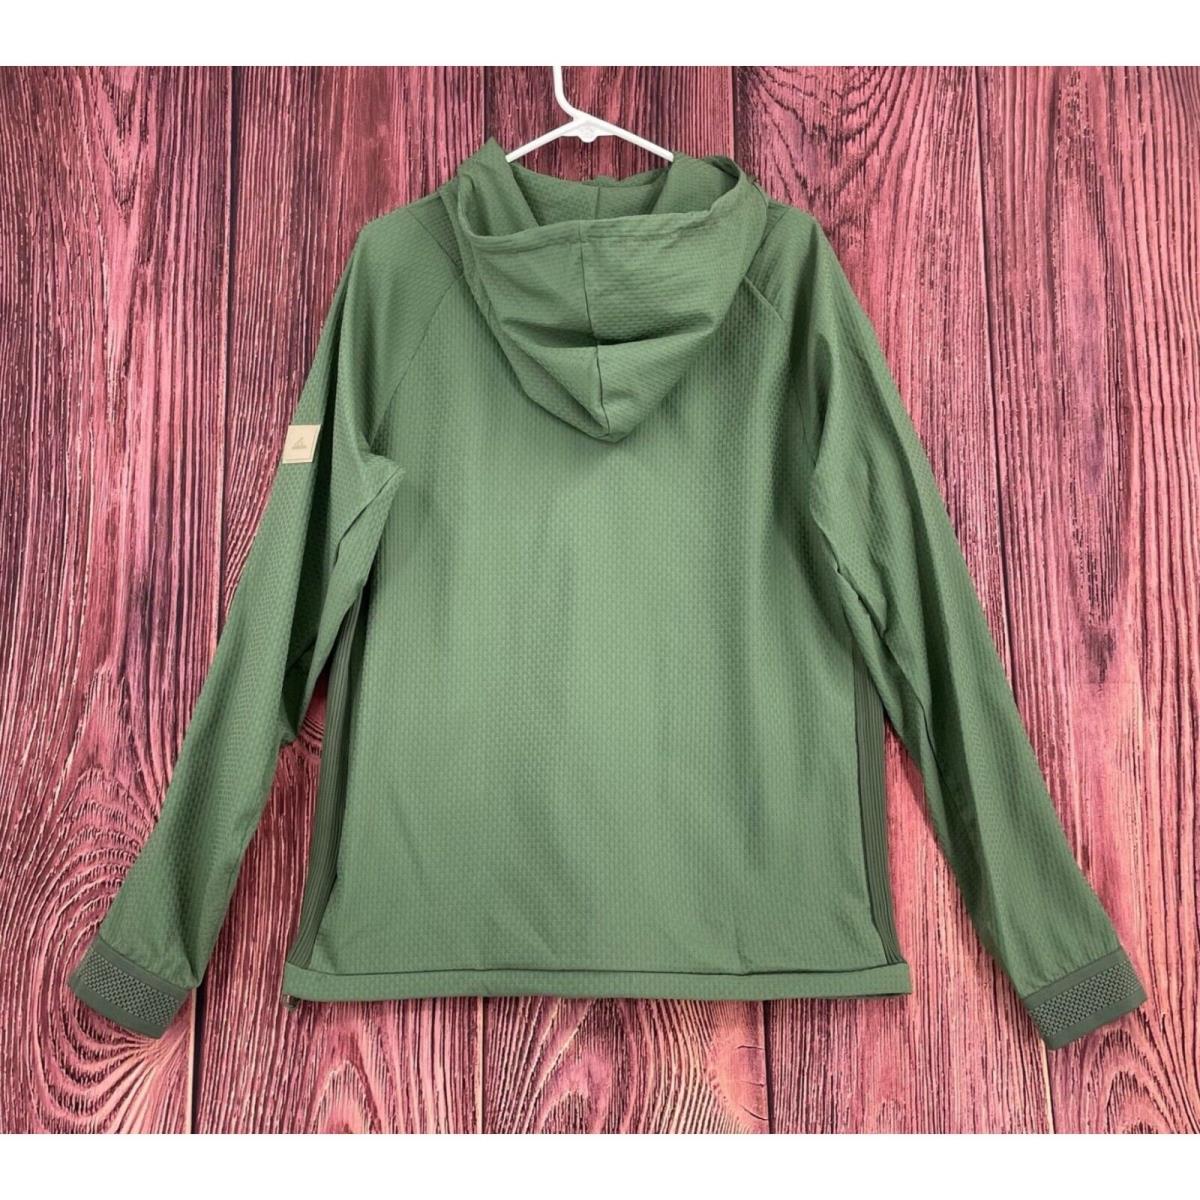 Adidas clothing  - Green 0